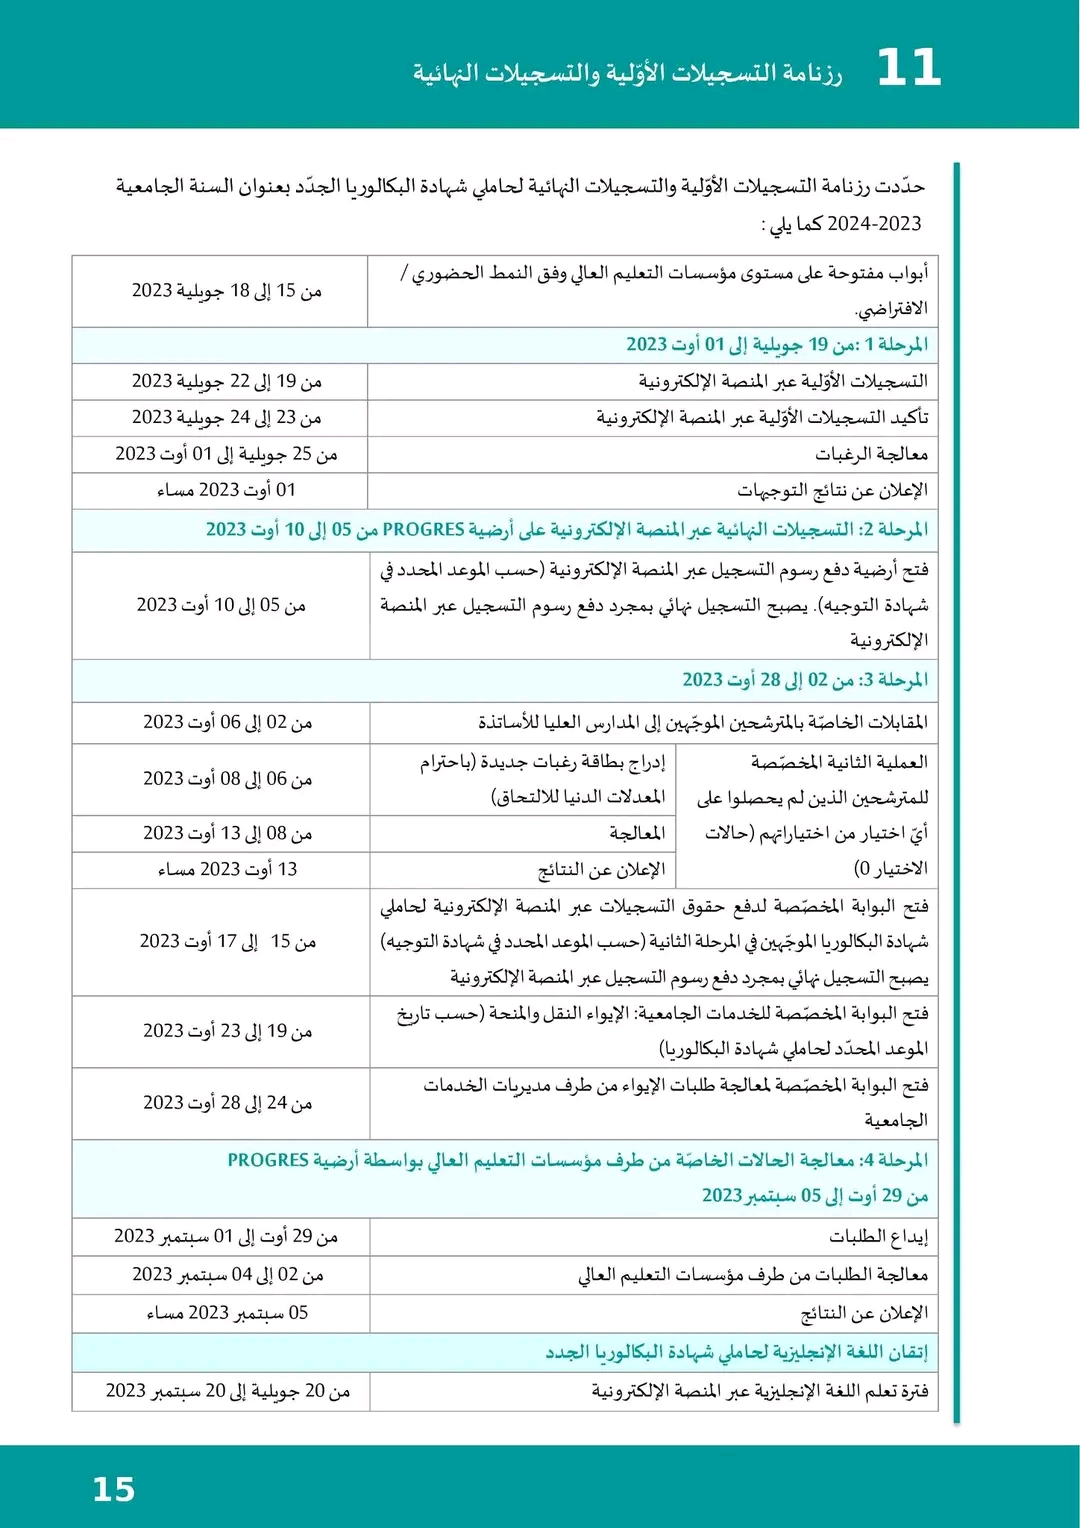 رزنامة التسجيلات النهائية للطلبة الجدد بجامعة الجزائر 2 البداية والنهاية 2023 2024